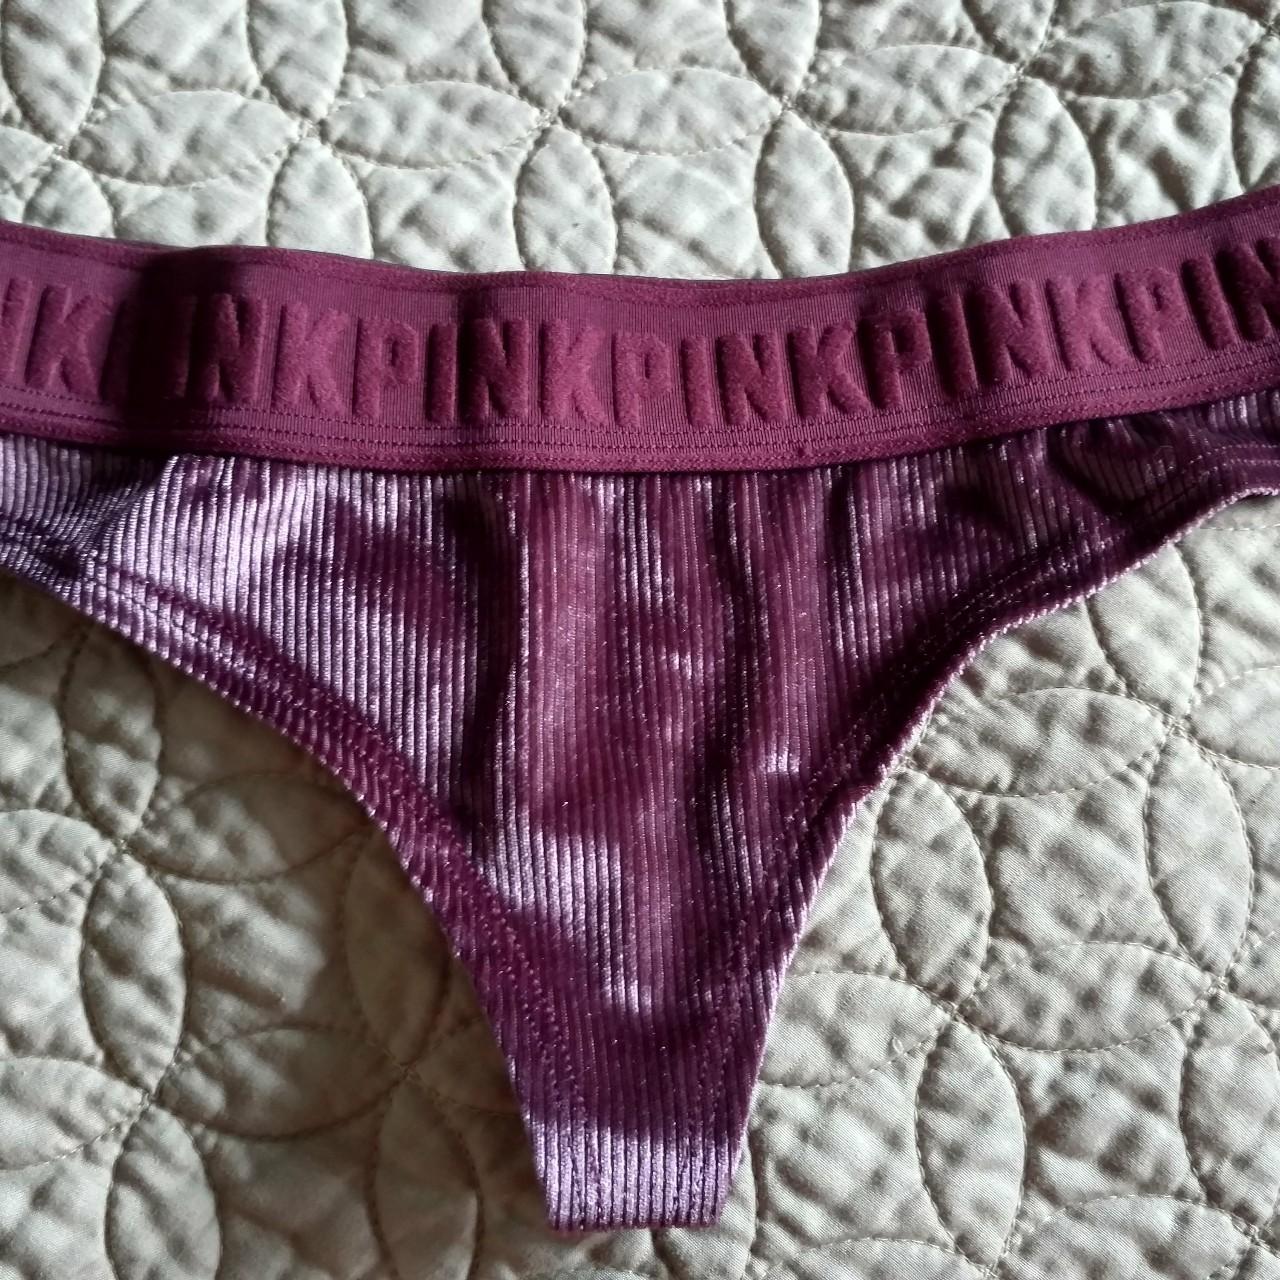 Victoria's Secret PINK velvet thong. Wide logo band. - Depop